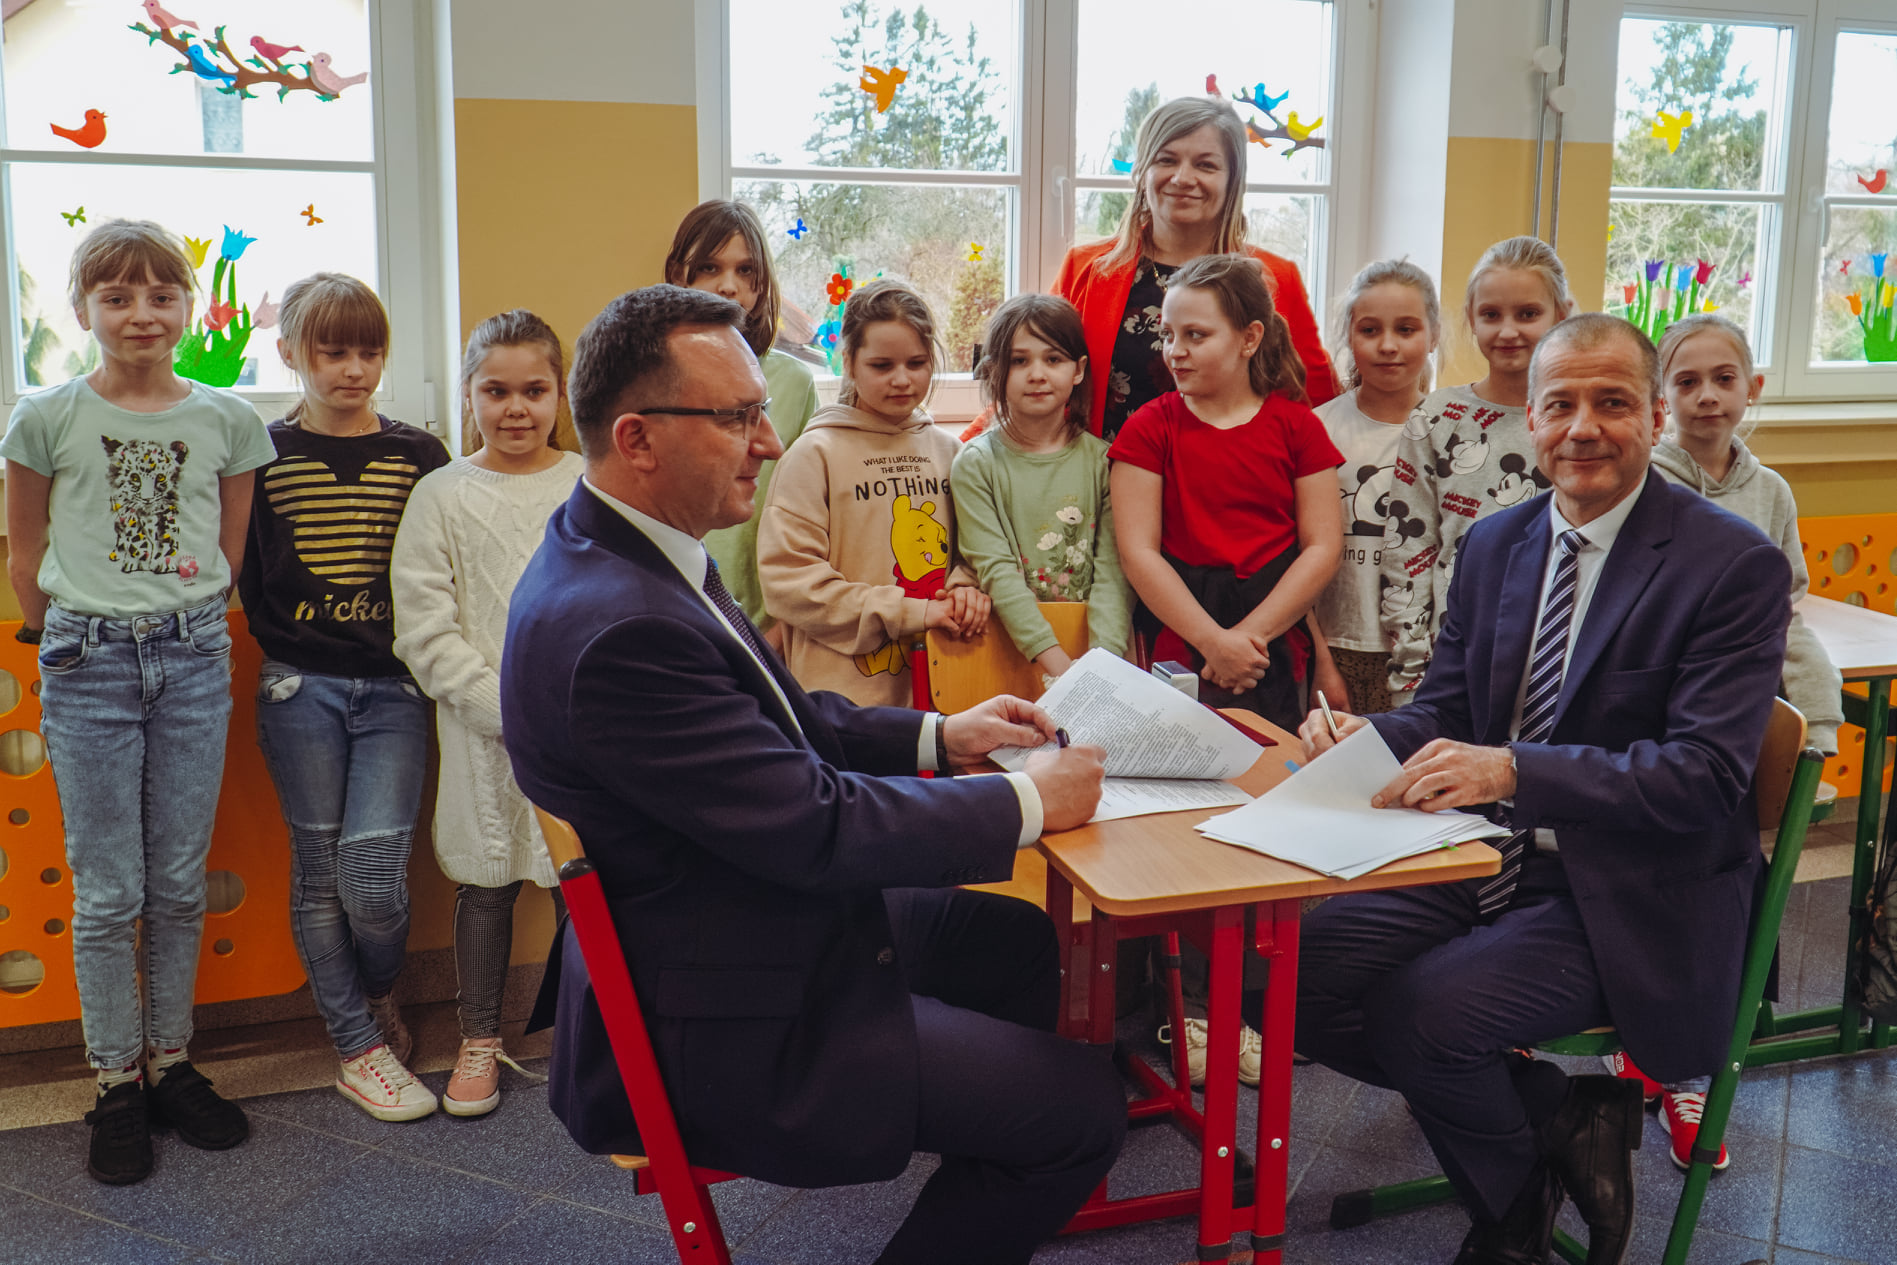 Burmistrz Miasta Tomasz Sielicki i Prezes Wodociągów Miejskich podpisują umowę za nimi stoją dzieci ze Szkoły Podstawowej Nr6